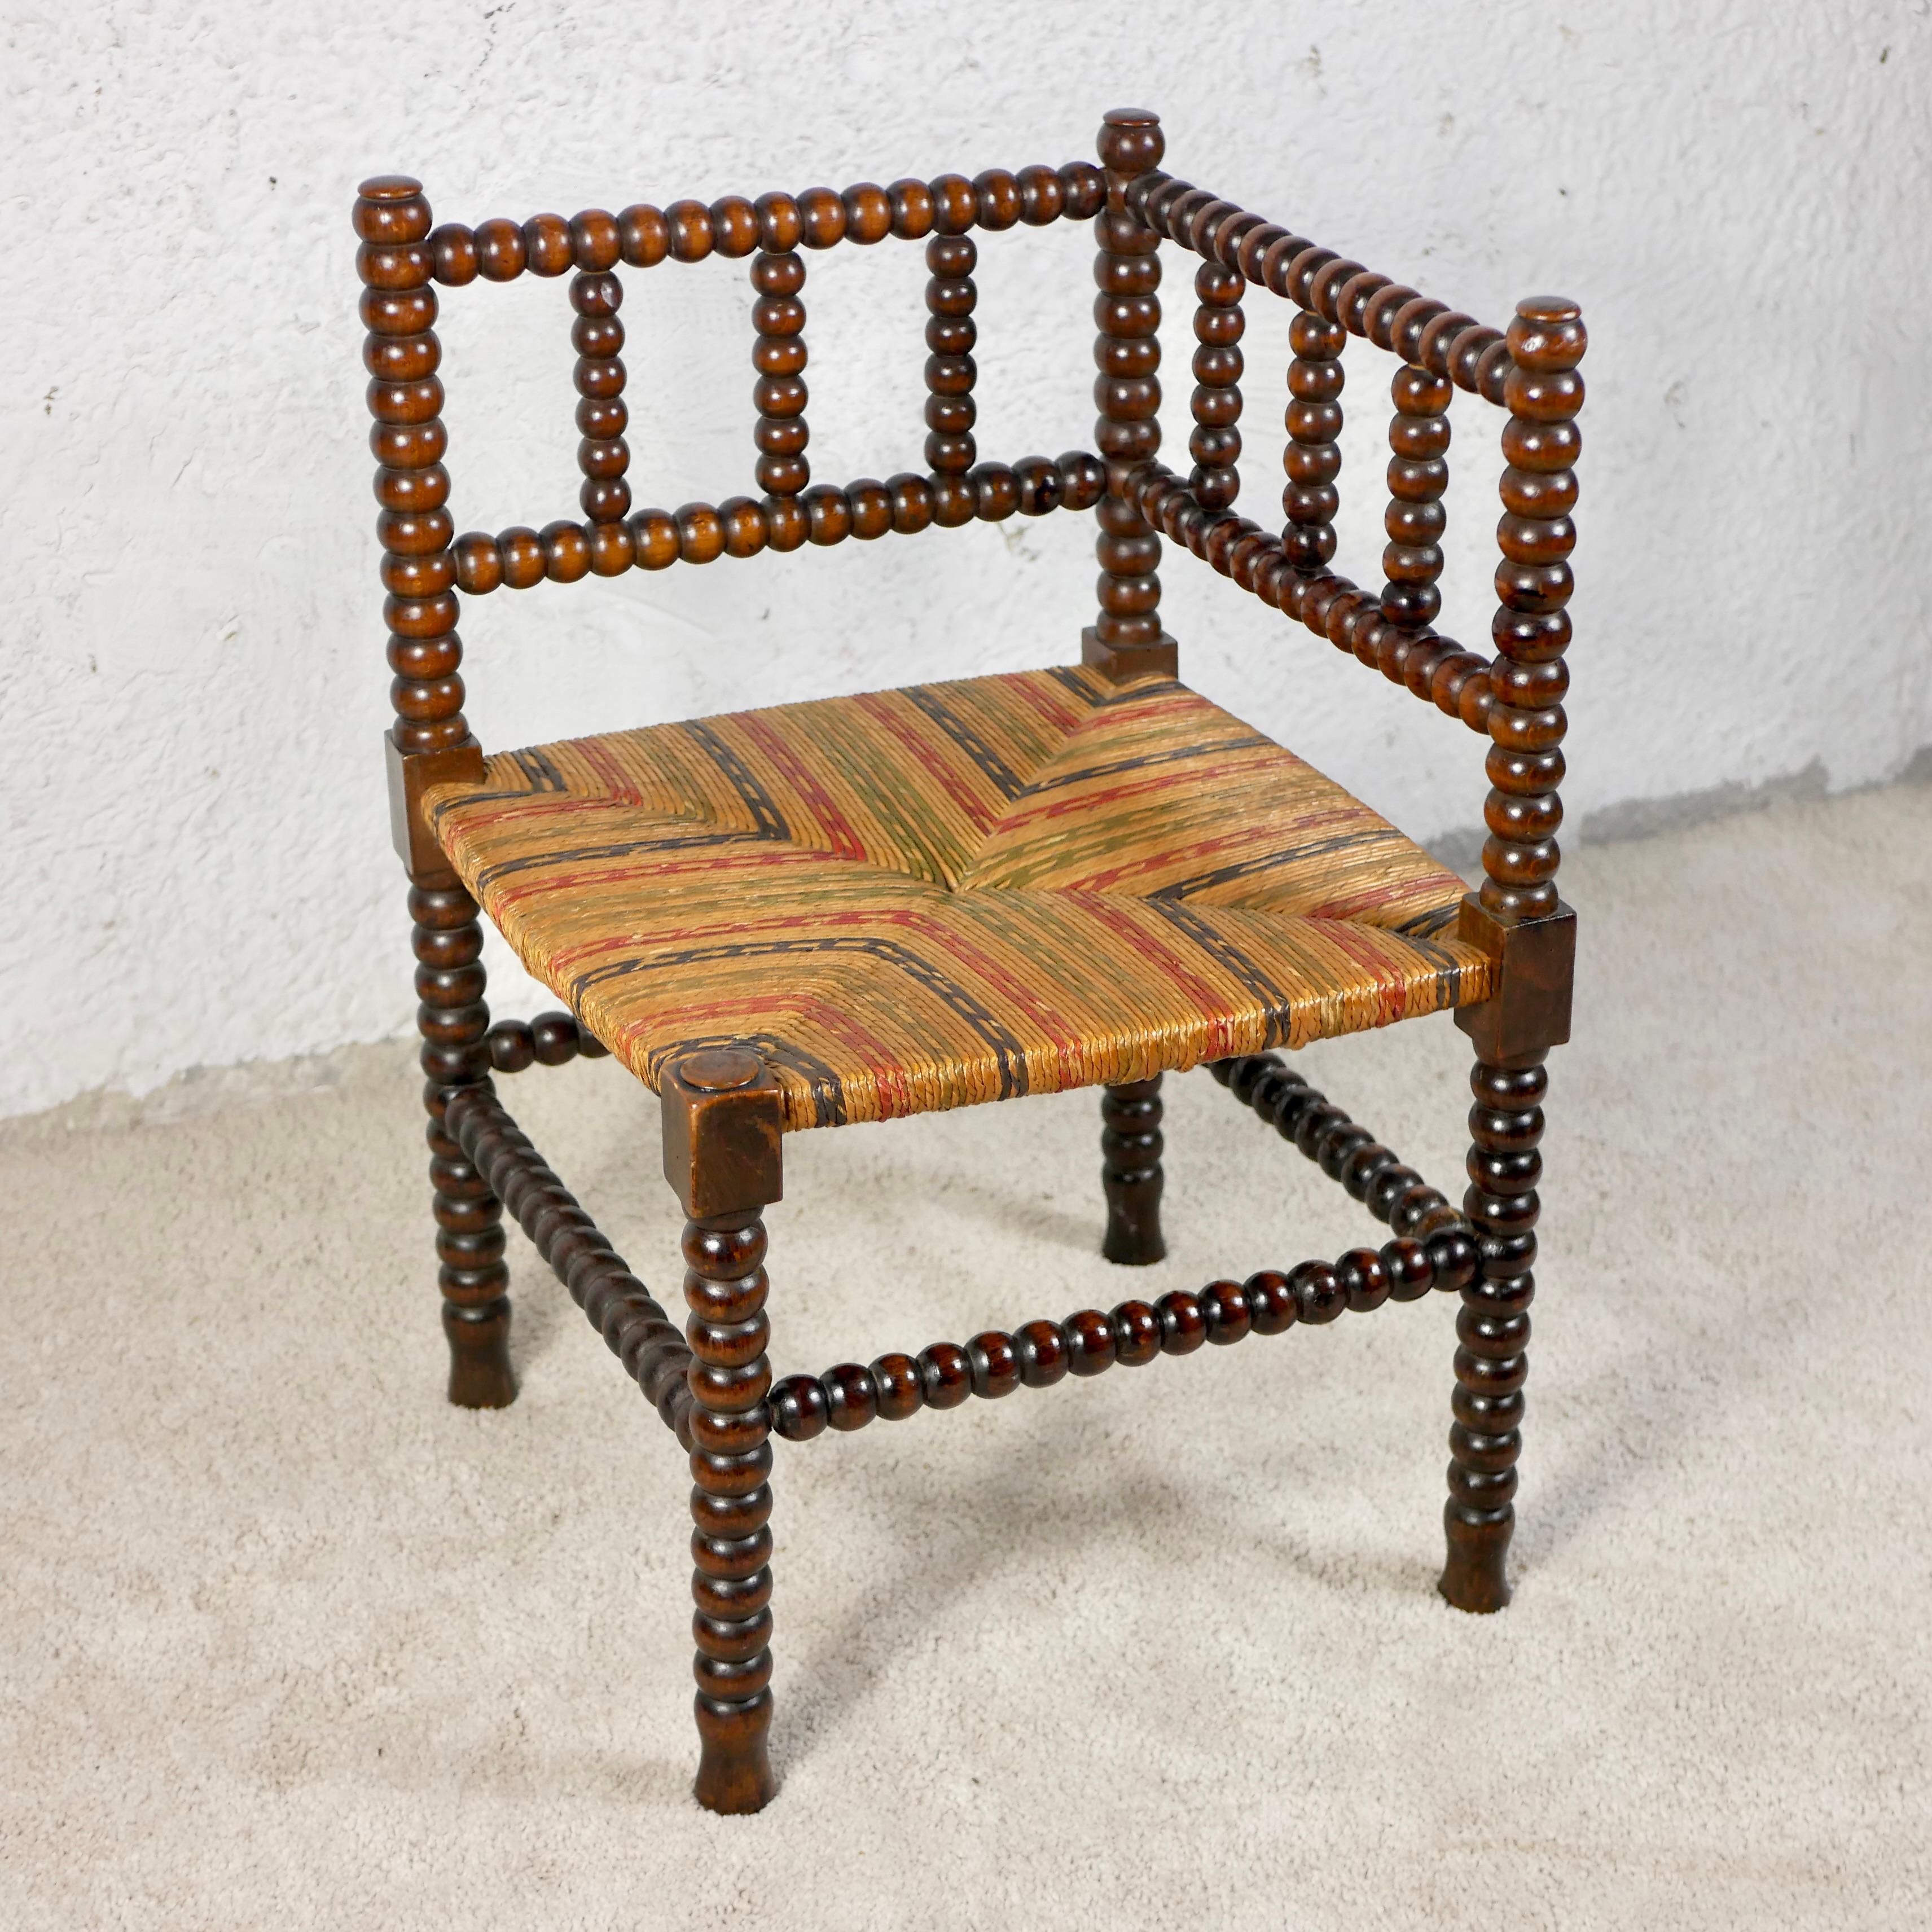 Belle chaise d'angle à assise multicolore, également appelée chaise Bobine, fabriquée en France entre la seconde moitié du XIXe siècle et le début du XXe siècle. 
Les chaises à bobines étaient des meubles courants, surtout à la campagne, et